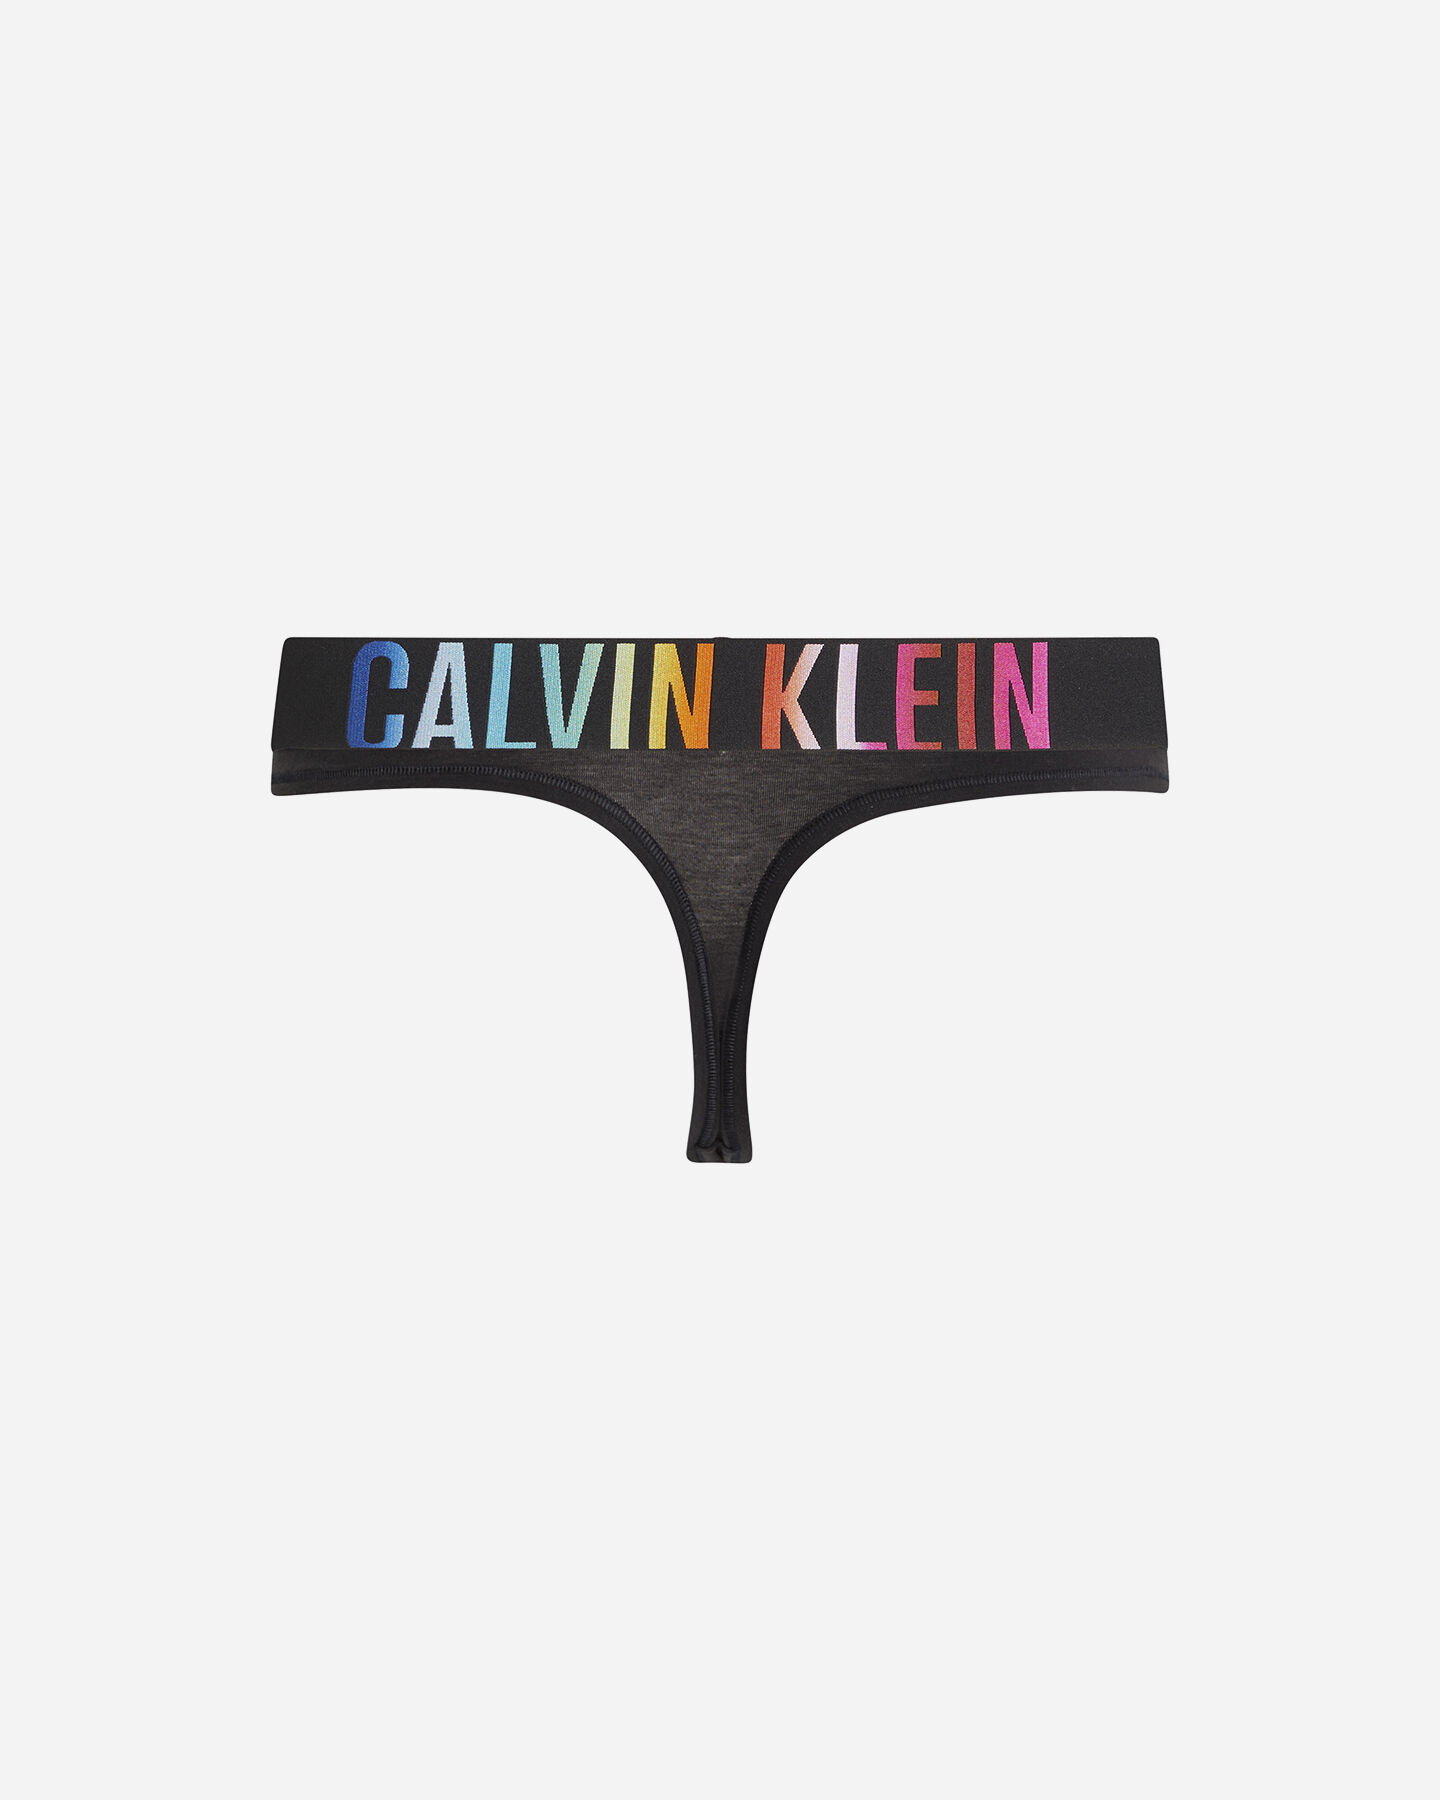  Intimo CALVIN KLEIN UNDERWEAR SLIP THONG W S4130900|UB1|XS scatto 1